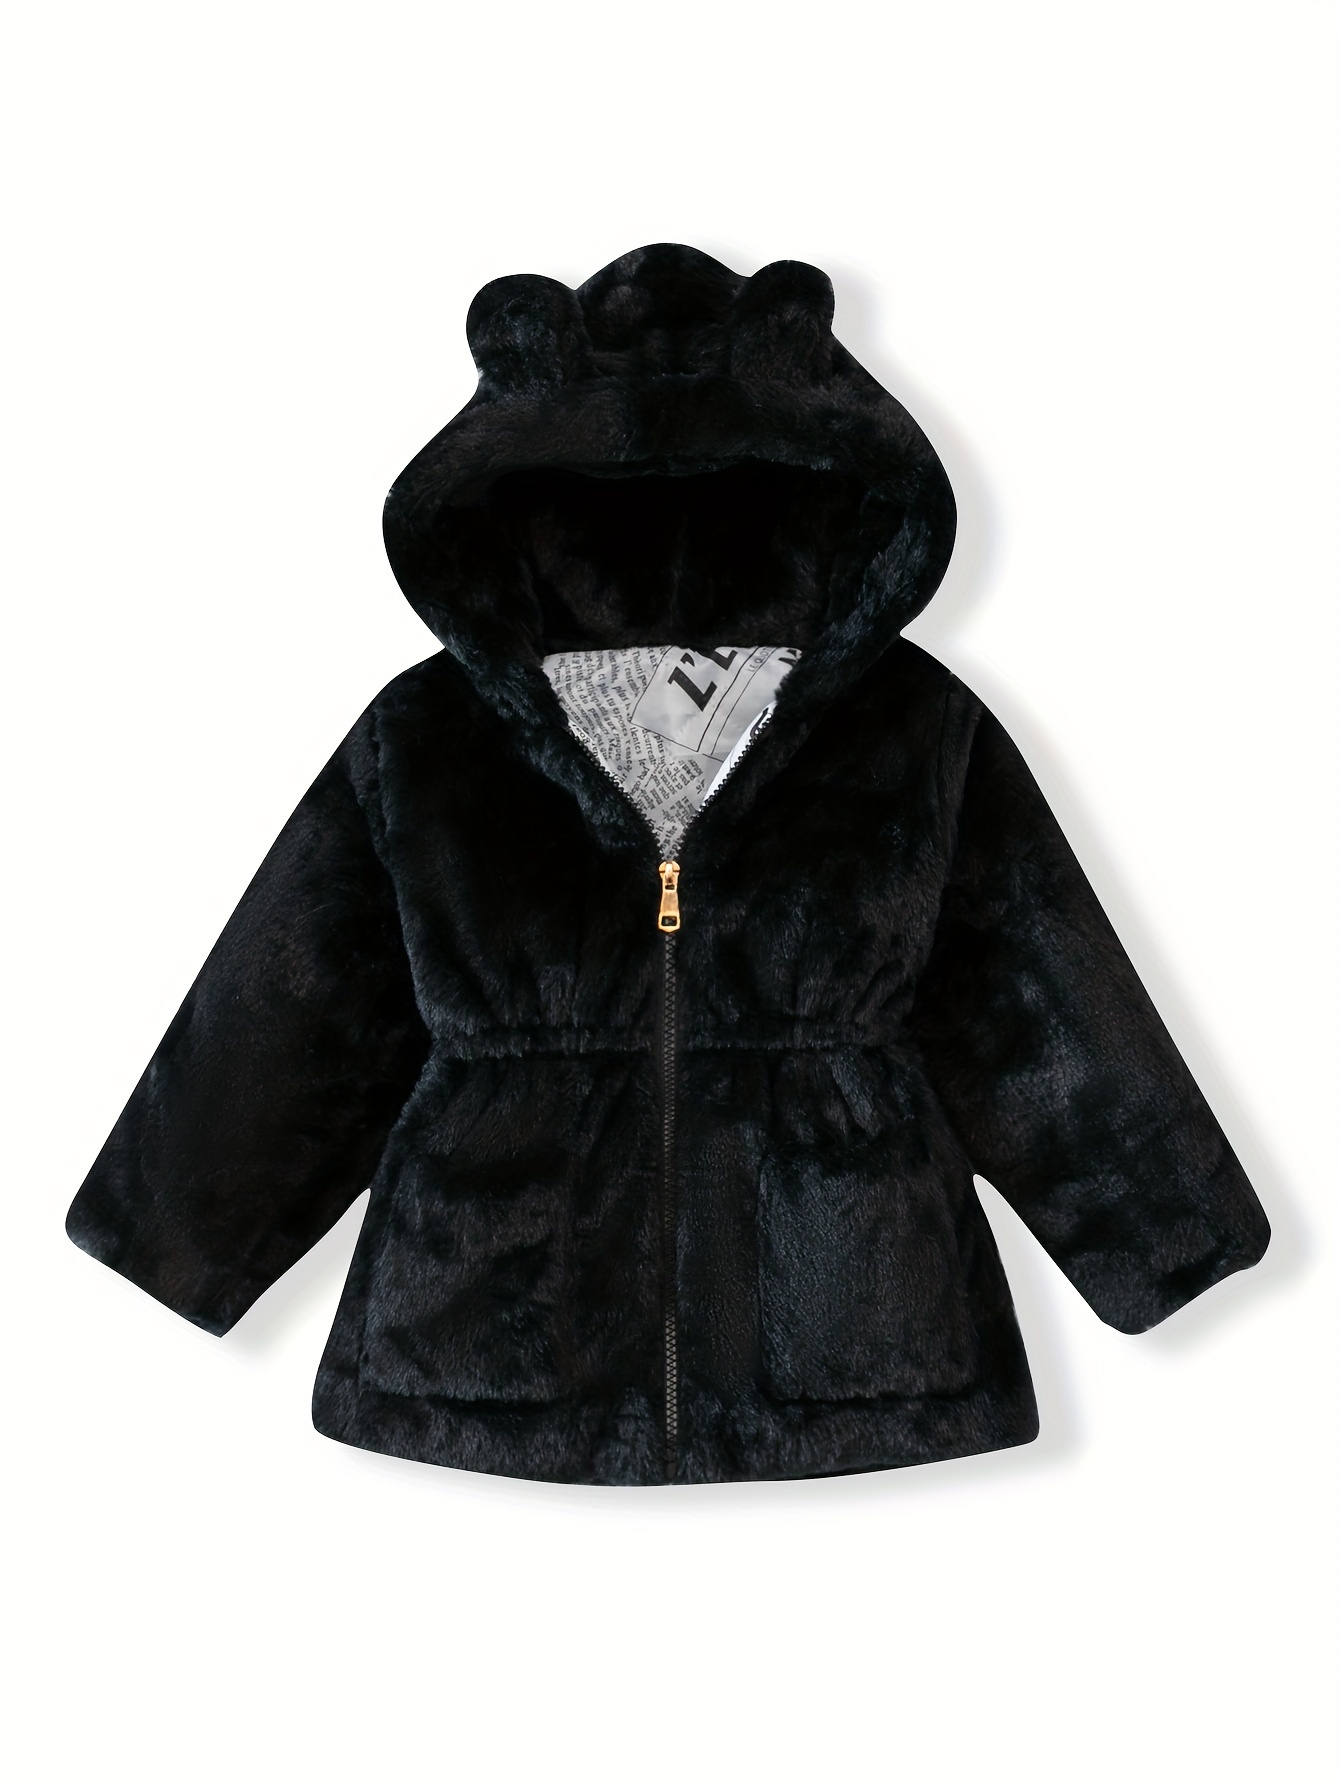 Tollder Kids Winter Fleece Jacket Warm Outwear Clothes Baby Girls Faux Fu𝐫  Teddy Long Coat Girls Winter Coat